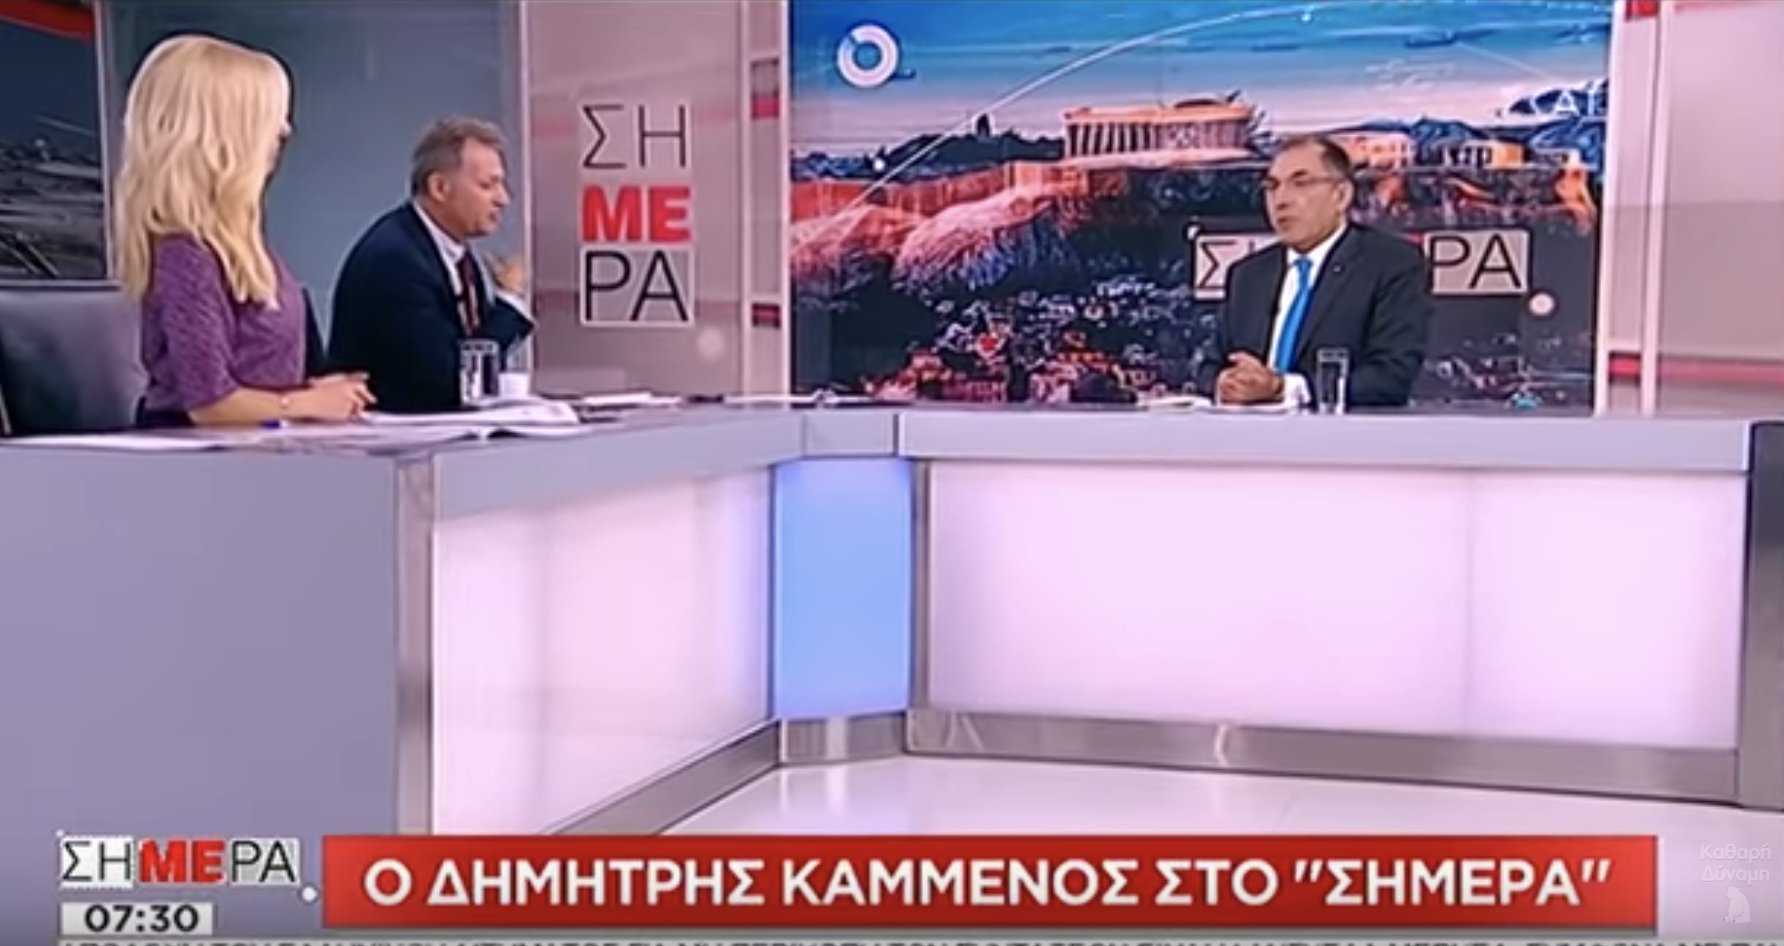 Ο Δ. Καμμένος, πρόεδρος της Δύναμης Ελληνισμού, για το αποτέλεσμα στα Σκόπια κλπ (ΣΚΑΪ, 3/10/18)